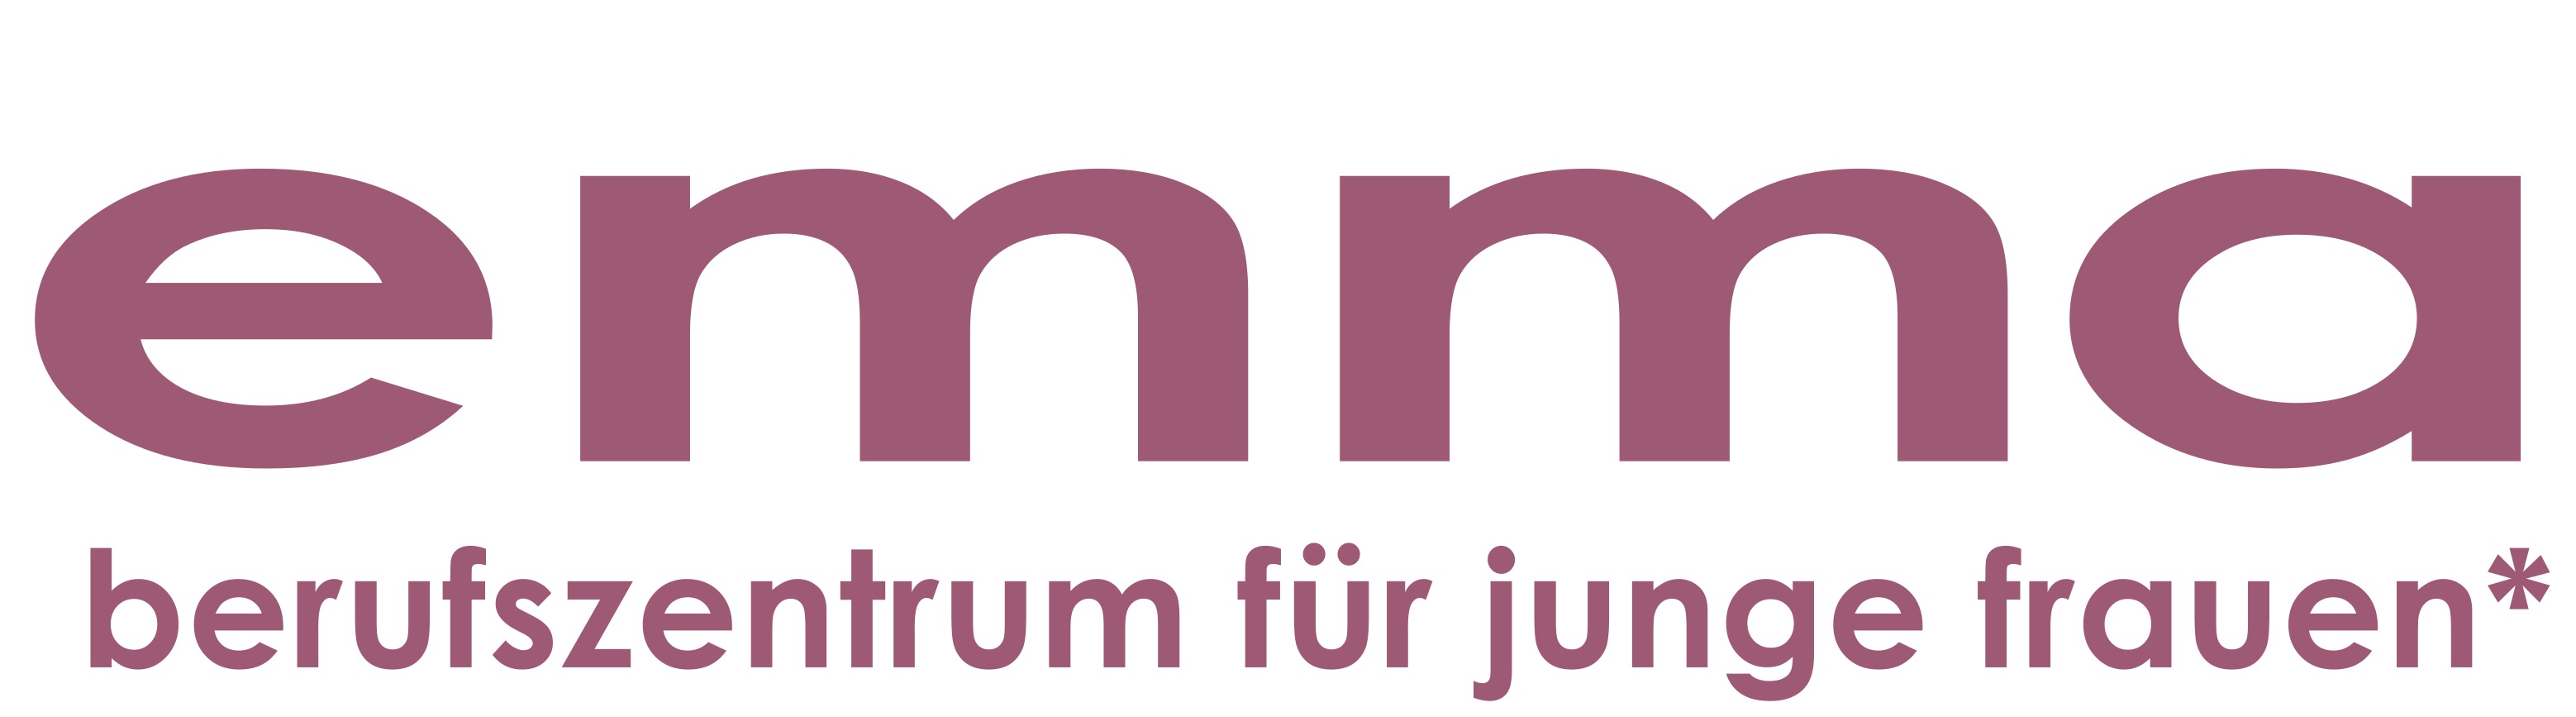 logo emma-Berufszentrum für junge Frauen*